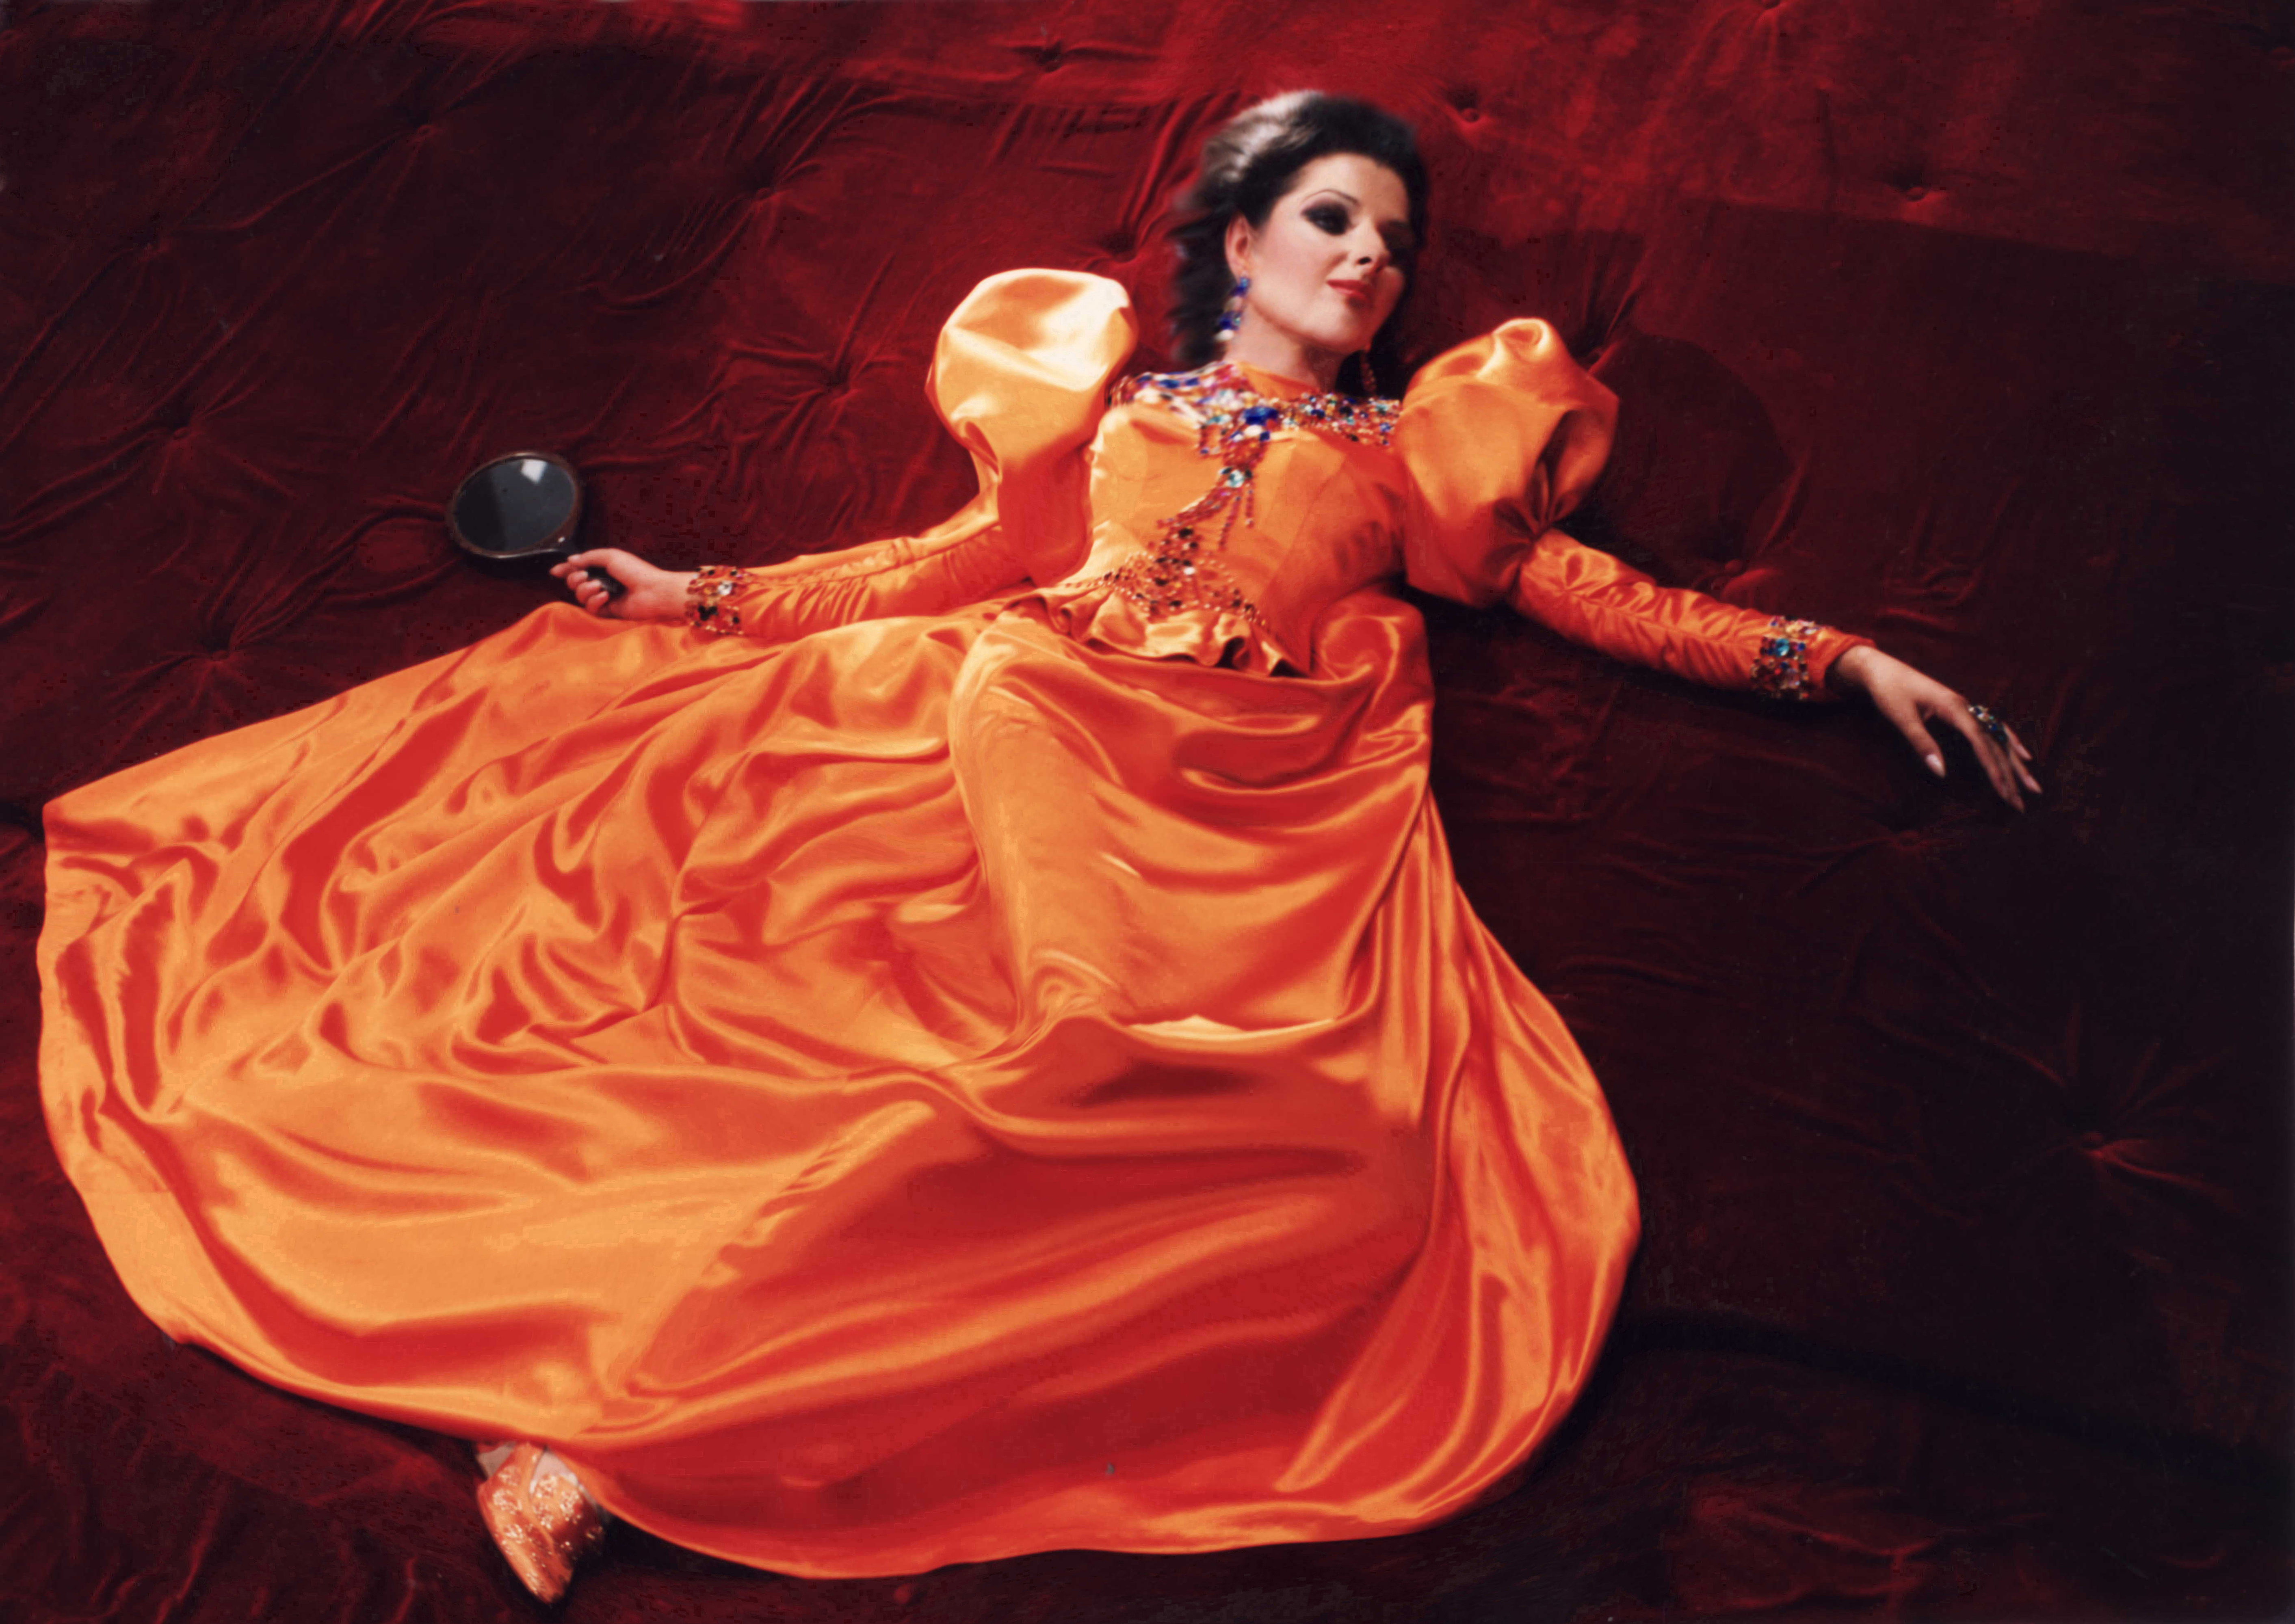 Lucia Aliberti⚘Lille Opera⚘Lille⚘Opera⚘"La Traviata"⚘On Stage⚘:http://www.luciaaliberti.it #luciaaliberti #lilleopera #onstage #latraviata #opera